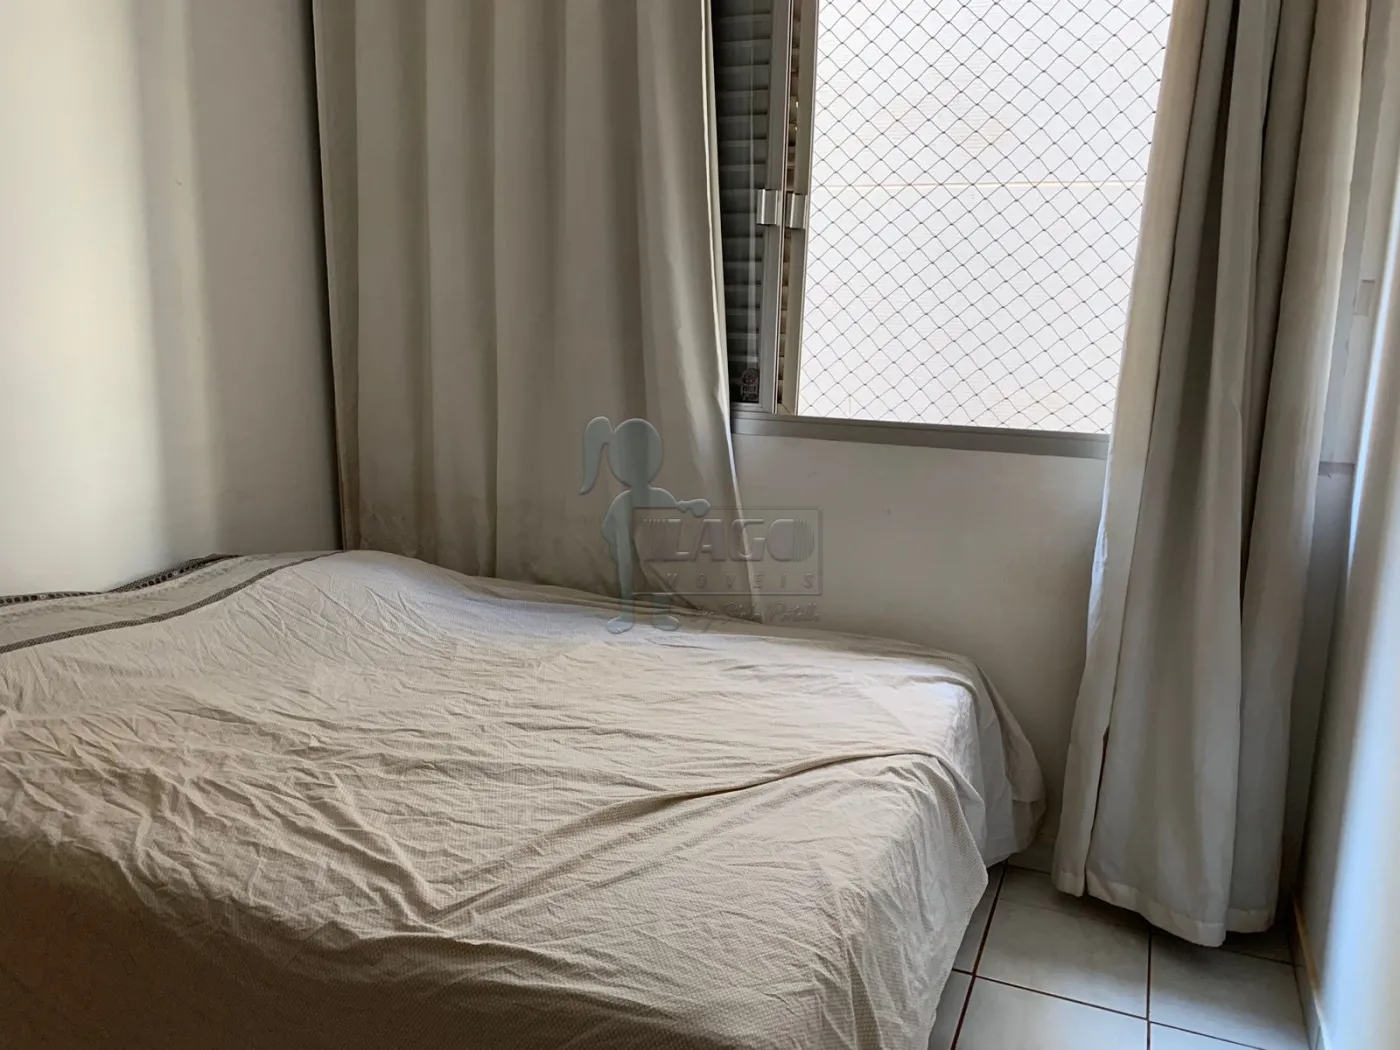 Comprar Apartamento / Duplex em Ribeirão Preto R$ 200.000,00 - Foto 5